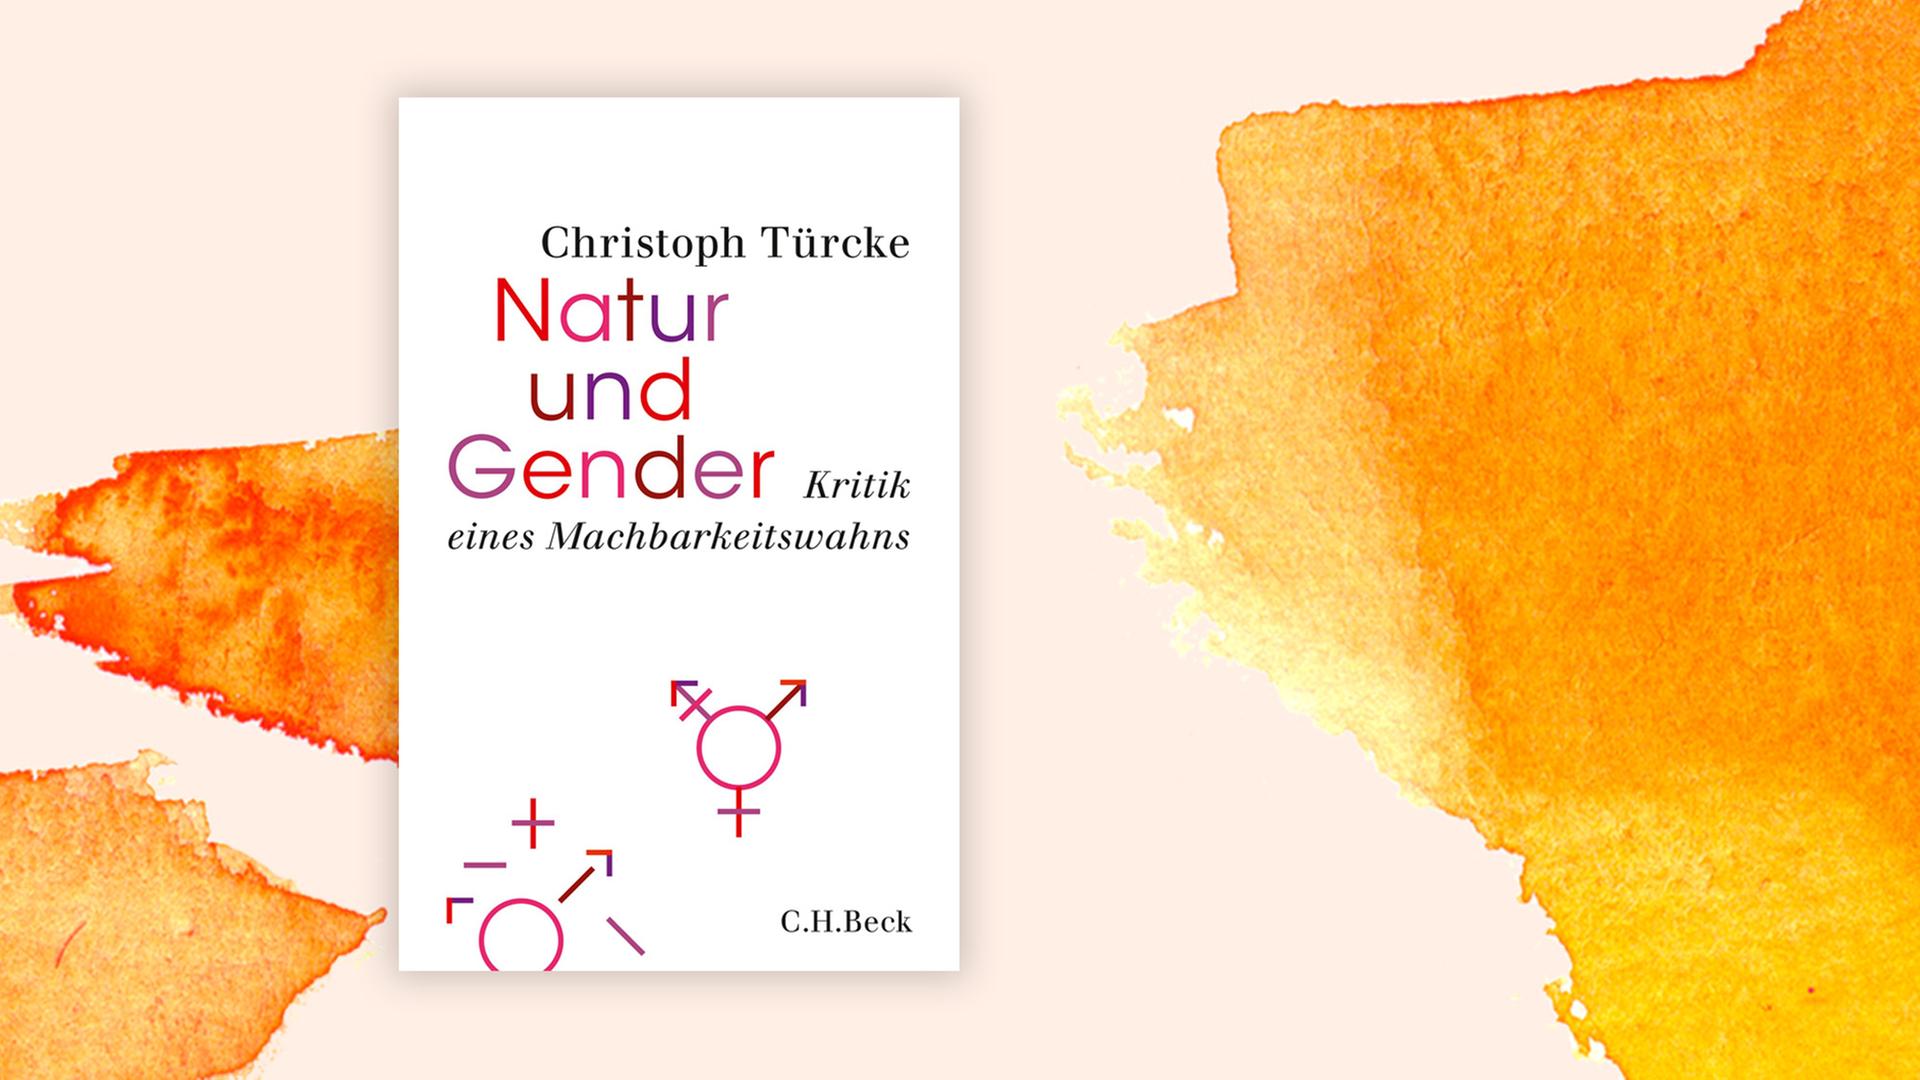 Das Cover von Christoph Türckes Buch "Natur und Gender" auf orange-weißem Hintergrund.